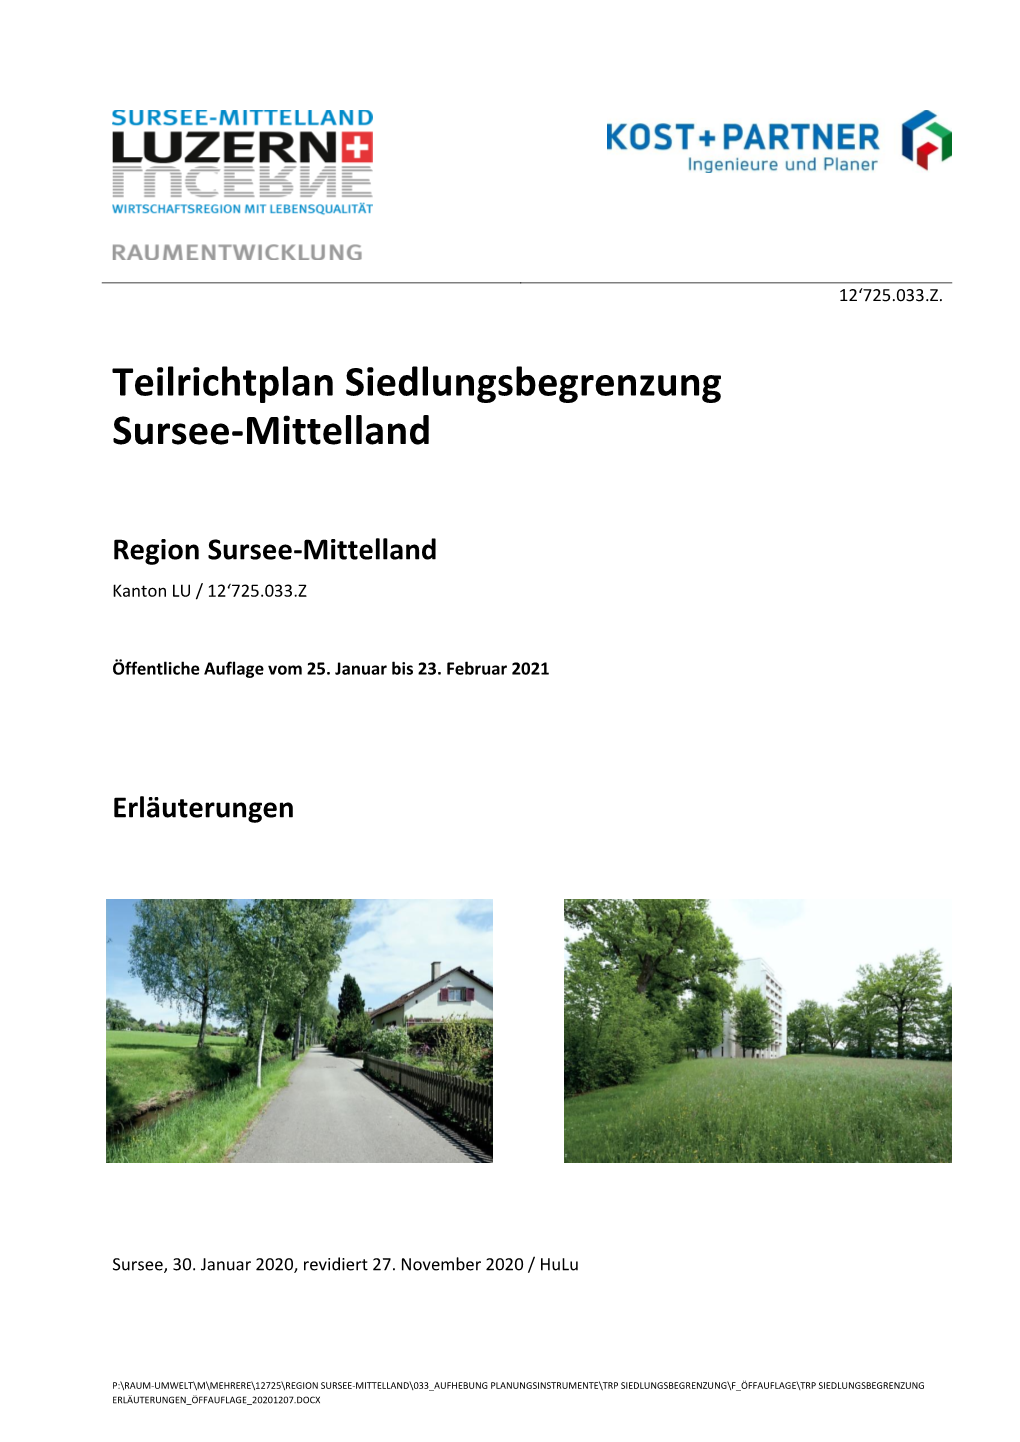 Teilrichtplan Siedlungsbegrenzung Sursee-Mittelland